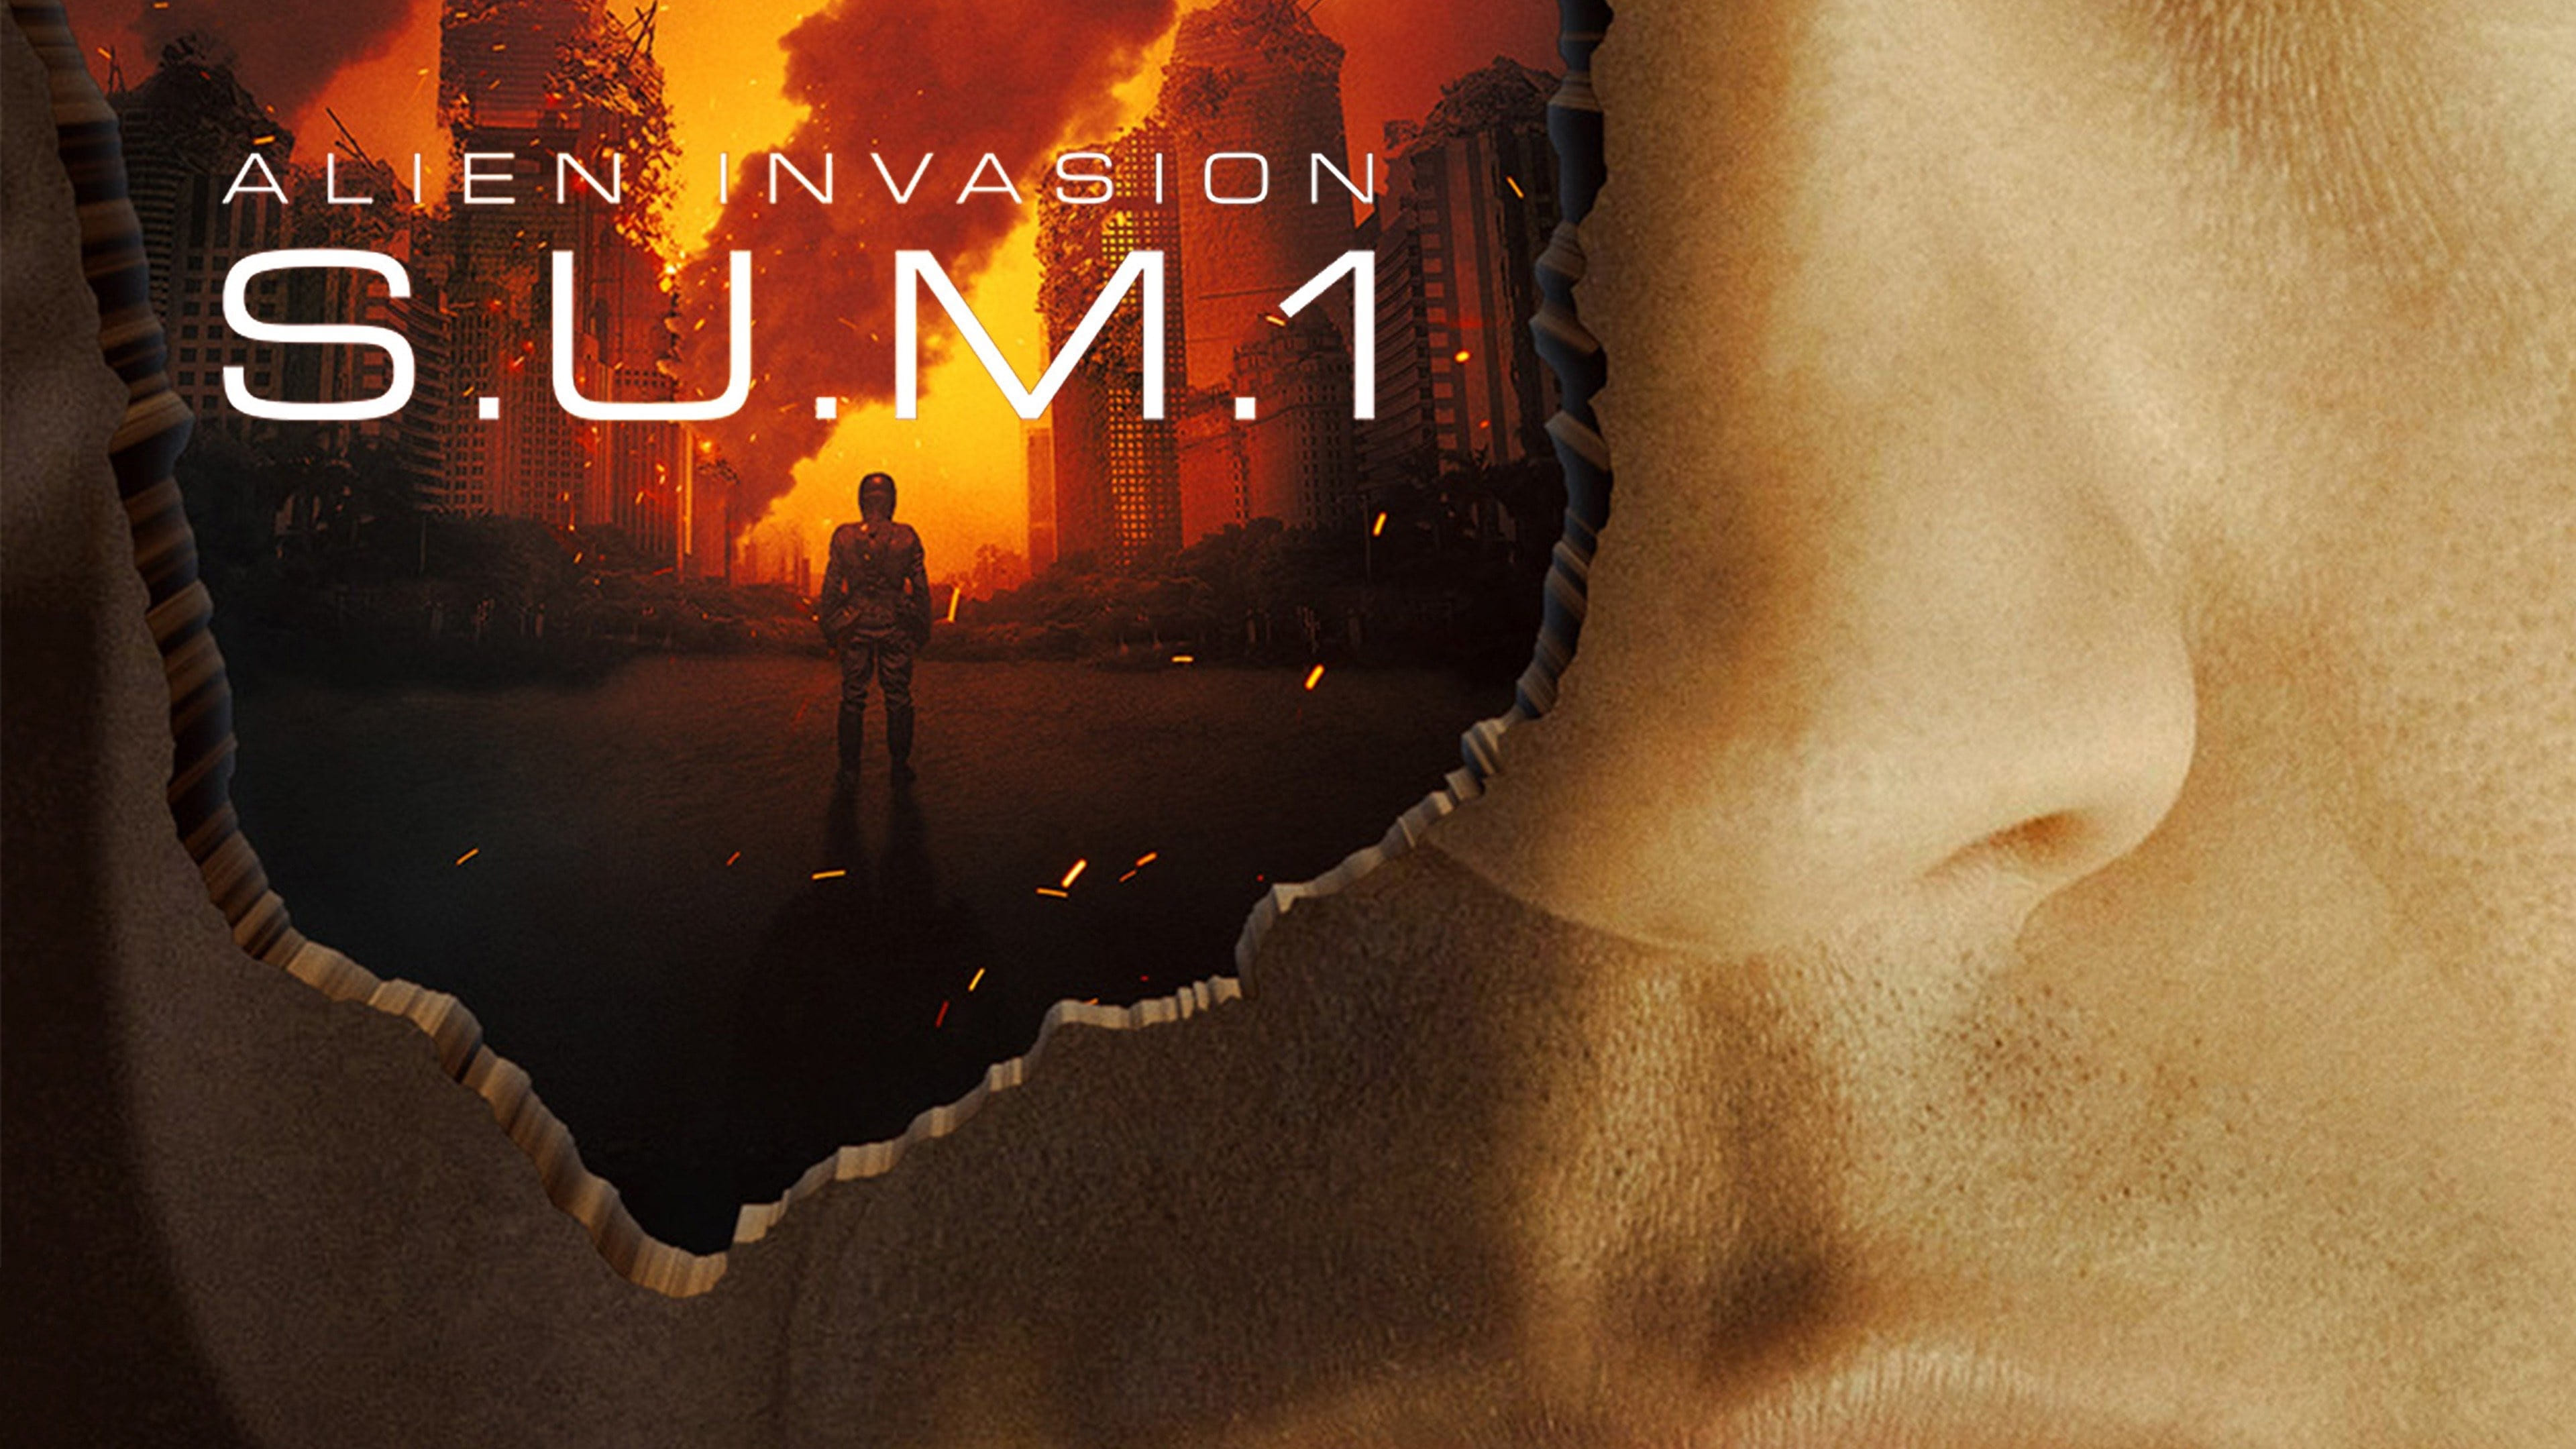 Alien Invasion: S.U.M.1 (2017)